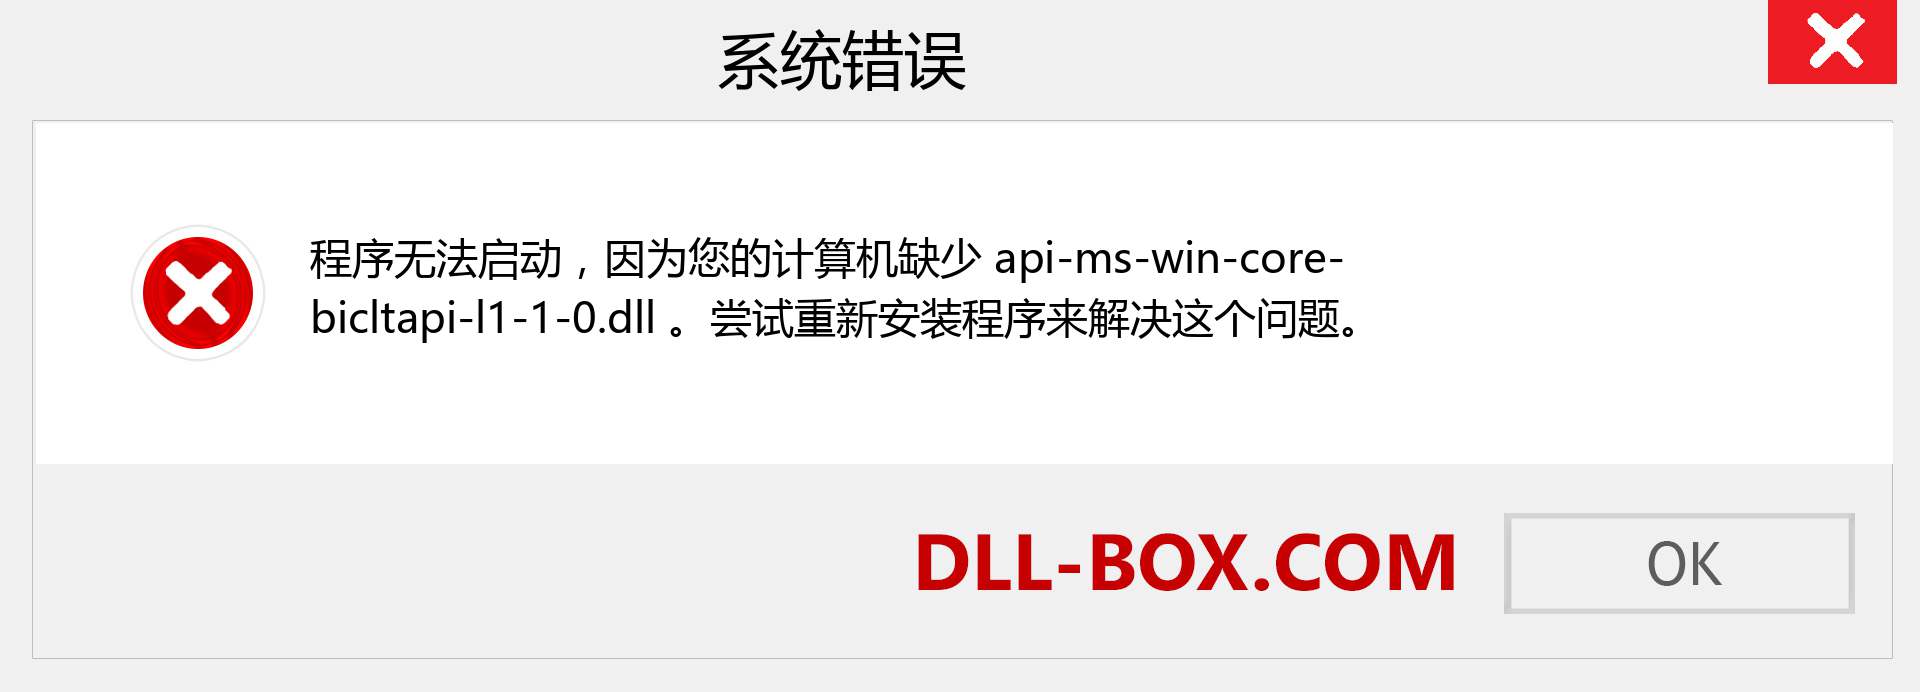 api-ms-win-core-bicltapi-l1-1-0.dll 文件丢失？。 适用于 Windows 7、8、10 的下载 - 修复 Windows、照片、图像上的 api-ms-win-core-bicltapi-l1-1-0 dll 丢失错误